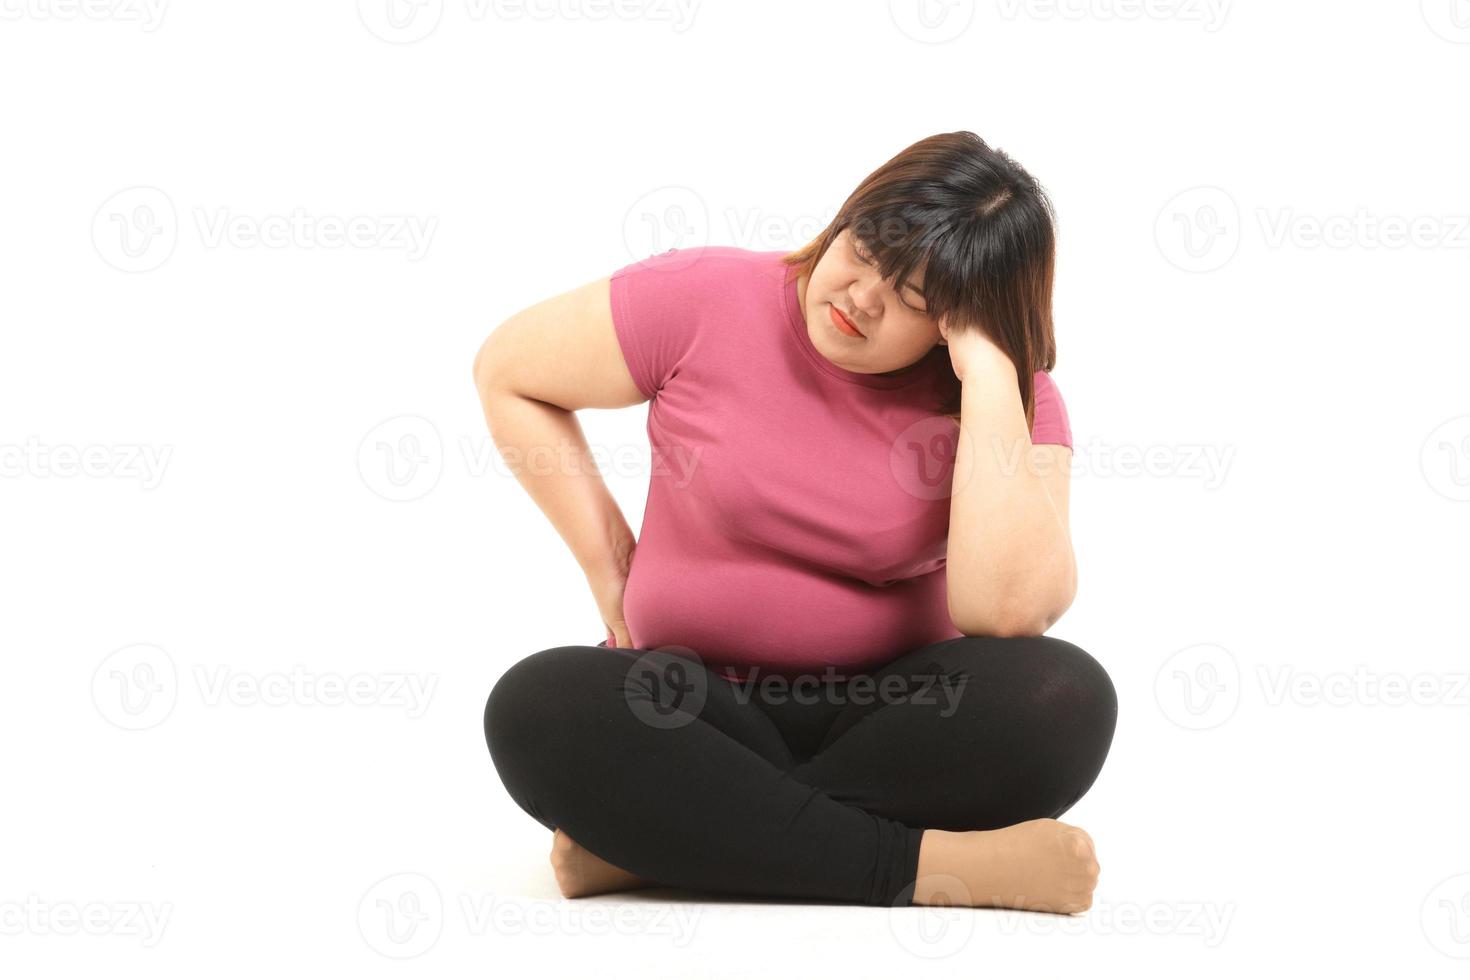 mujer asiática gorda con ropa de gimnasia sentada estresada en un fondo blanco. el concepto de perder peso, quemar grasa, hacer ejercicio para mantenerse saludable, problemas de salud de las personas obesas. foto